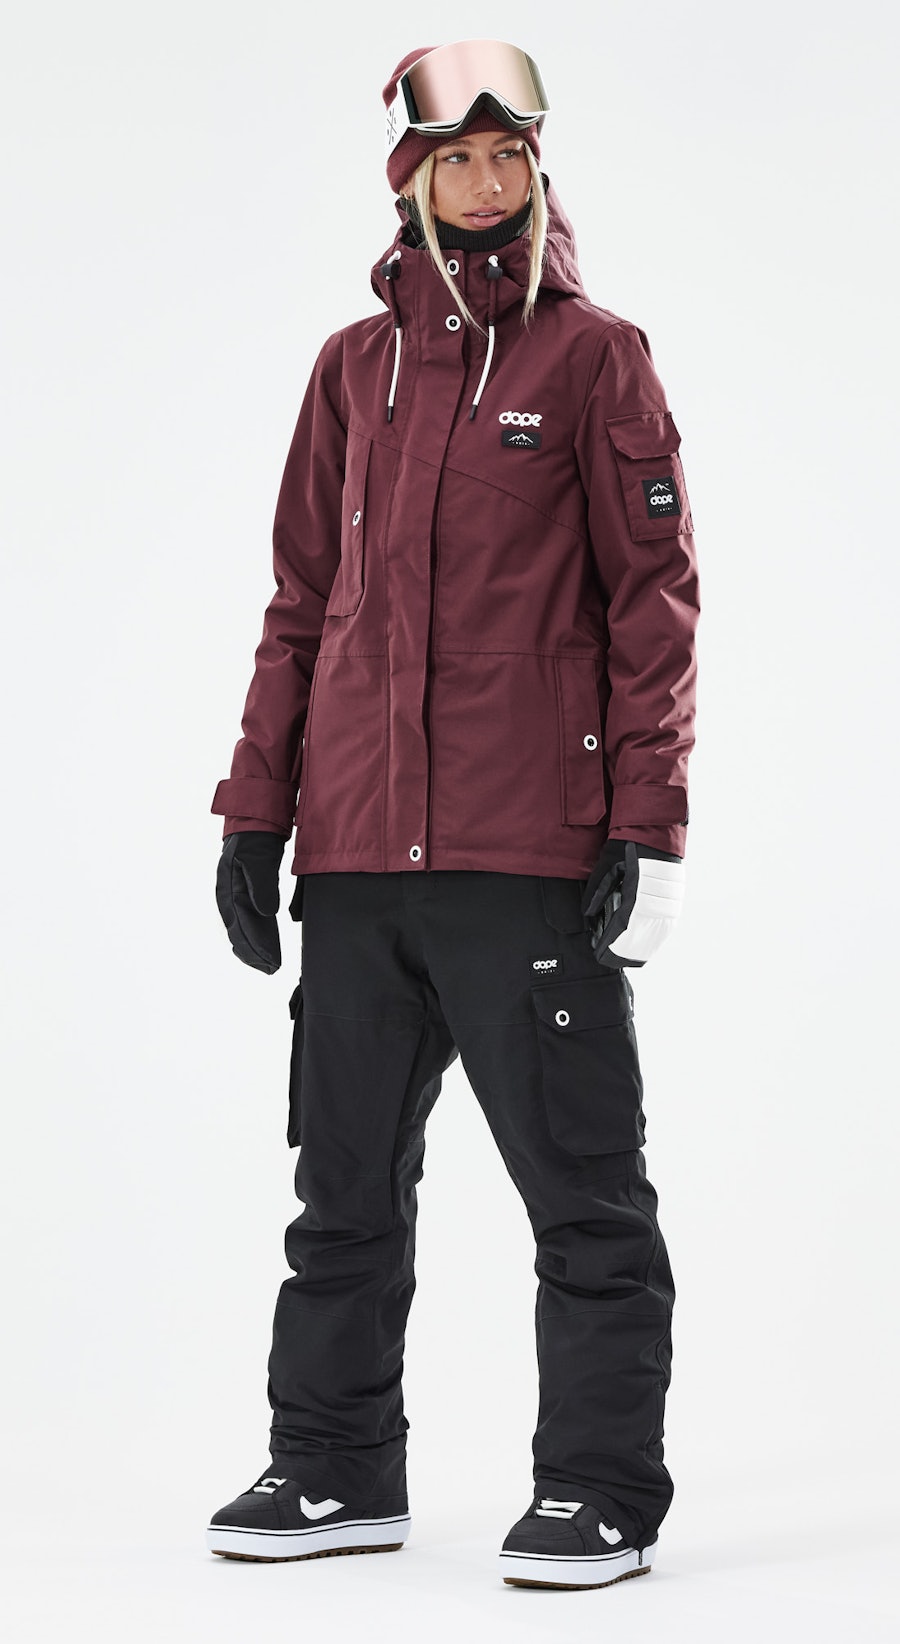 Adept W Snowboardový Outfit Dámské Burgundy/Black